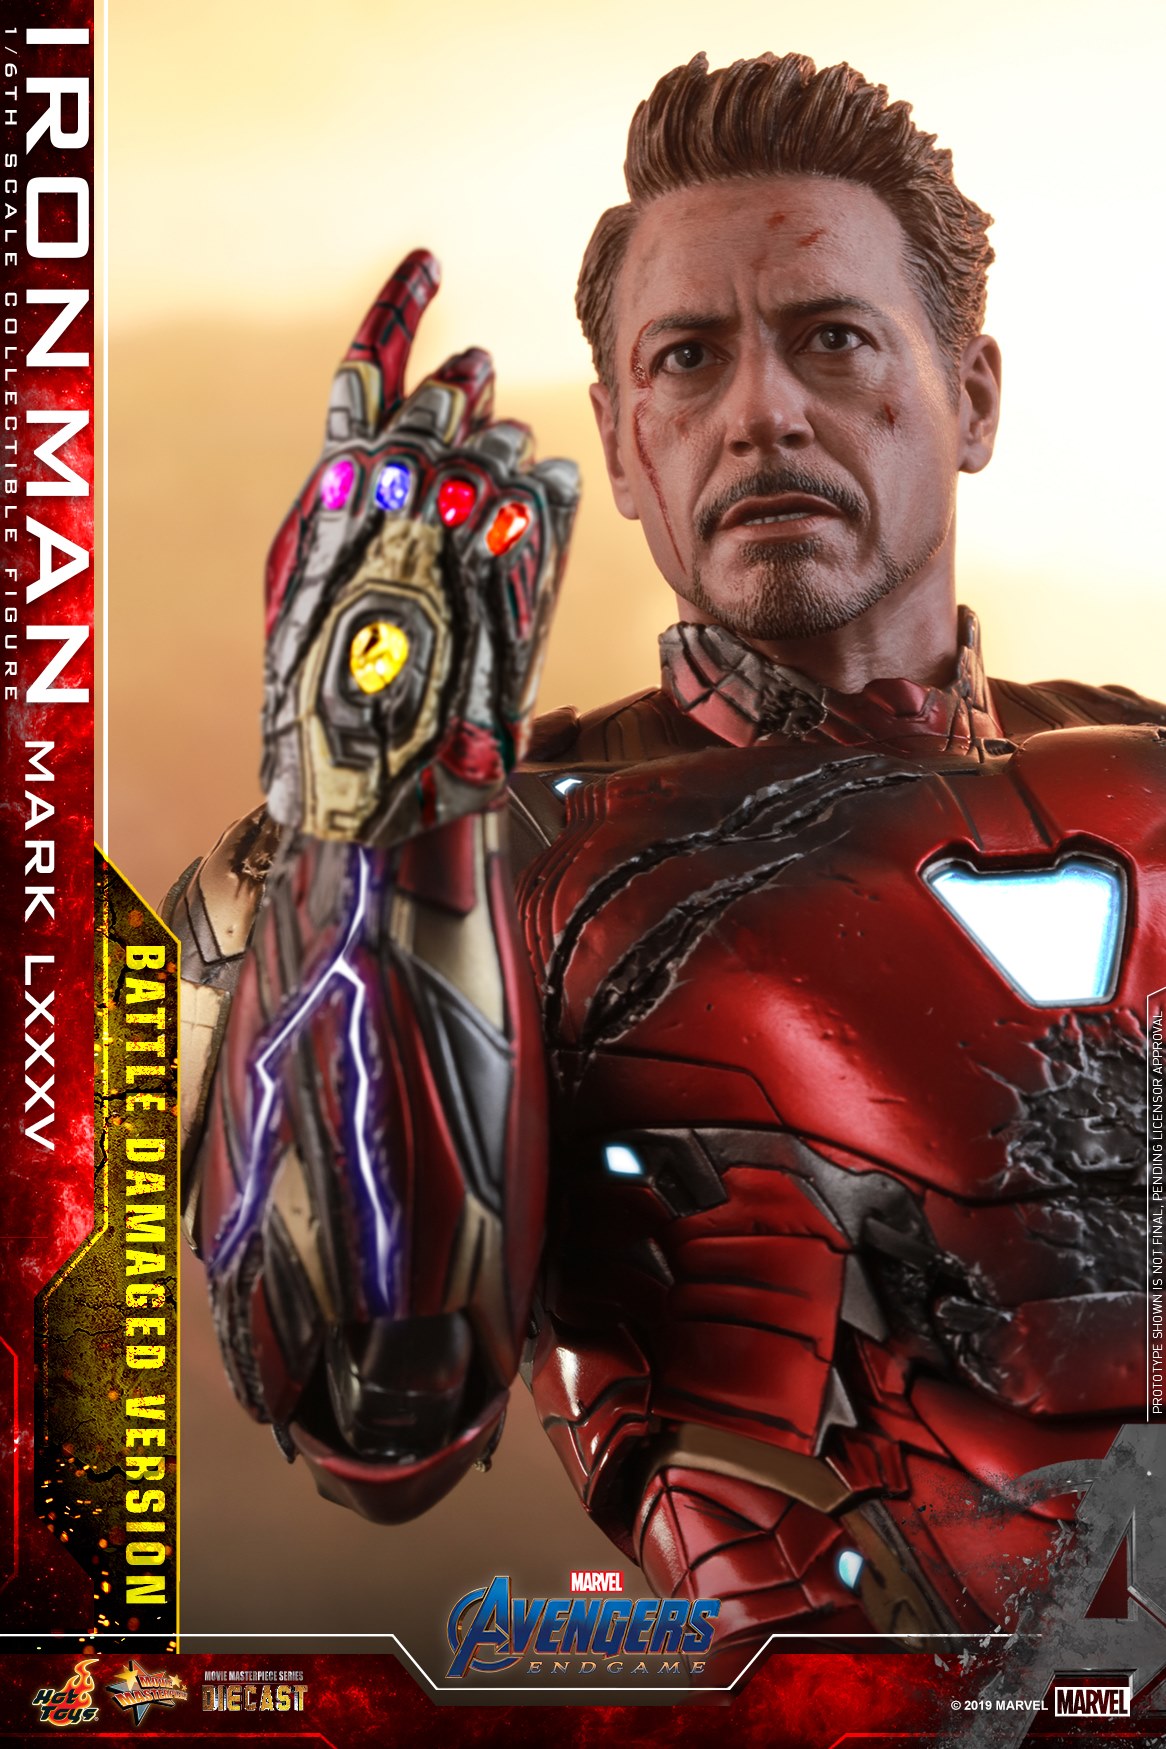 Hot Toys Battle Damaged Iron Man Mark 85 Figure Up For